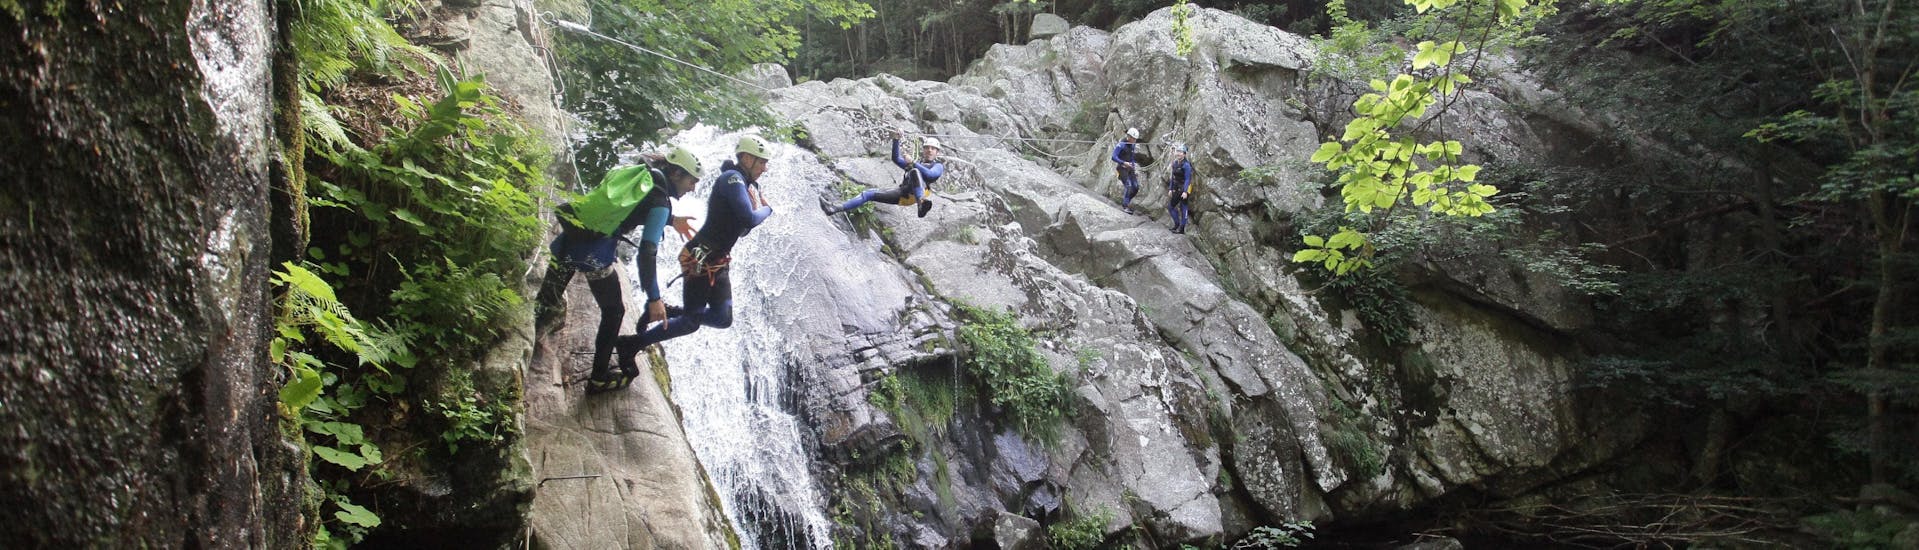 Los amigos están superando diferentes obstáculos, incluida una tirolina y saltos, durante su barranquismo clásico en el Cañón Aéro Besorgues, con Geo Ardèche Canyon.